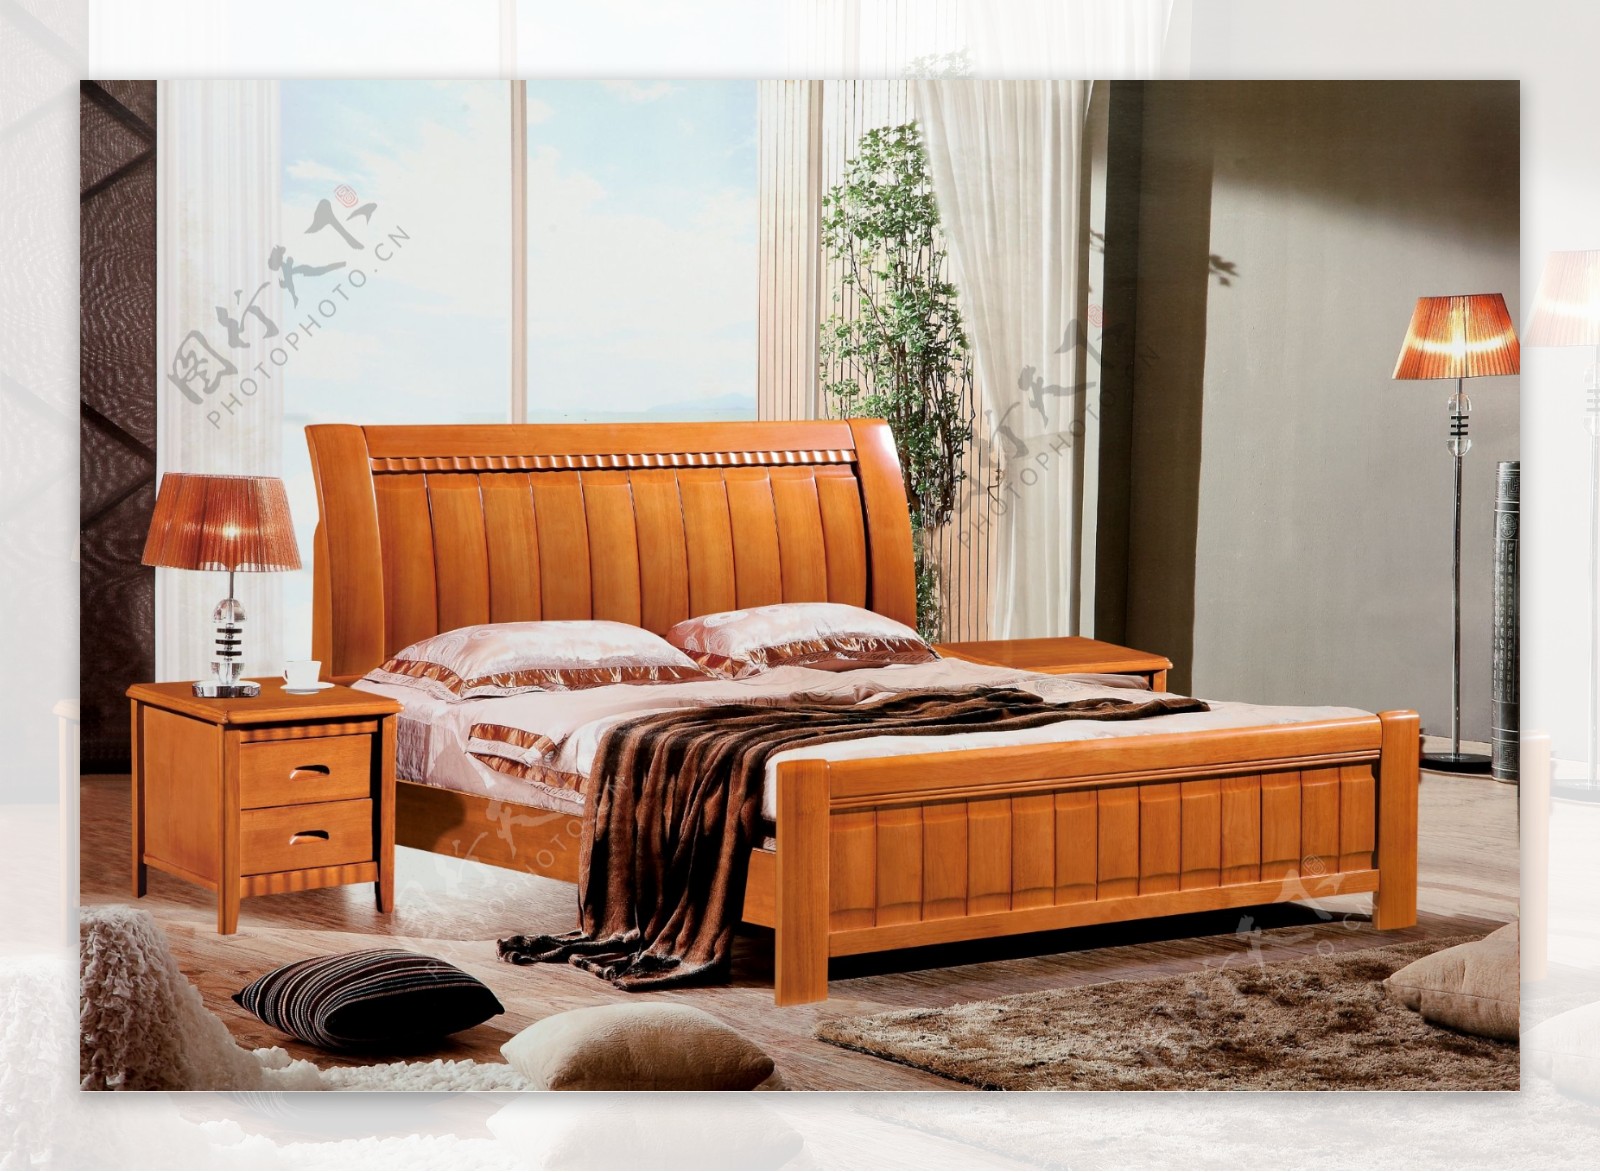 家具实木床背景实图片